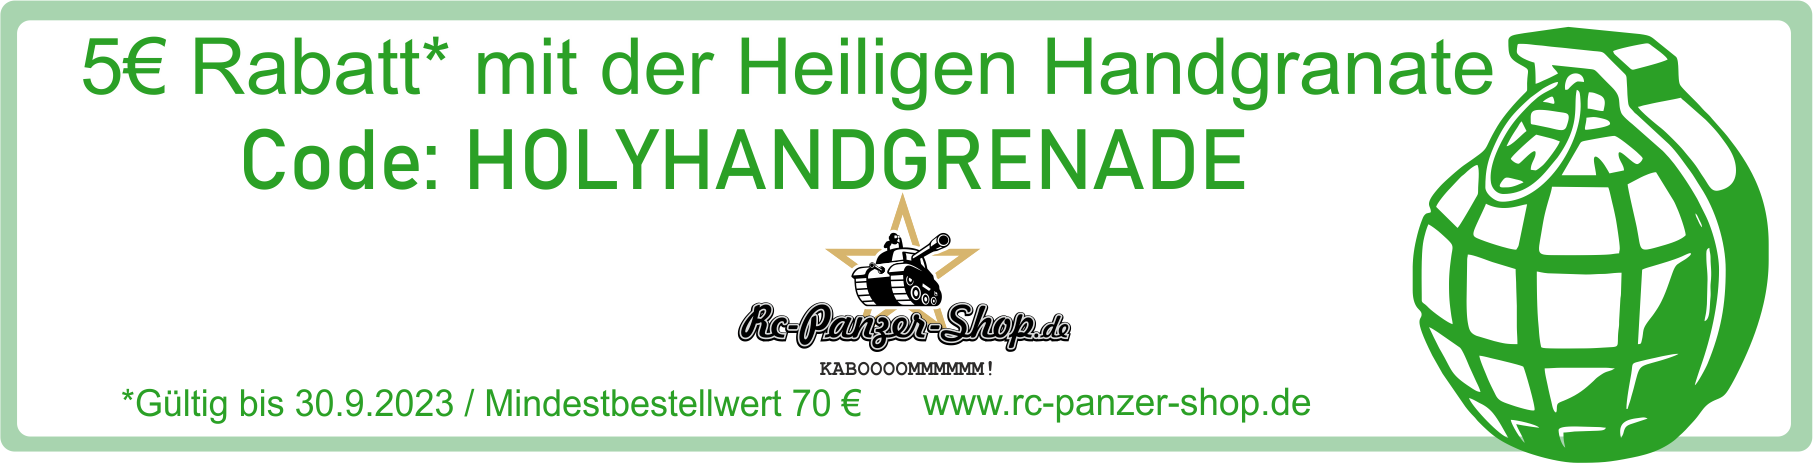 rc-panzer-handgranate1a